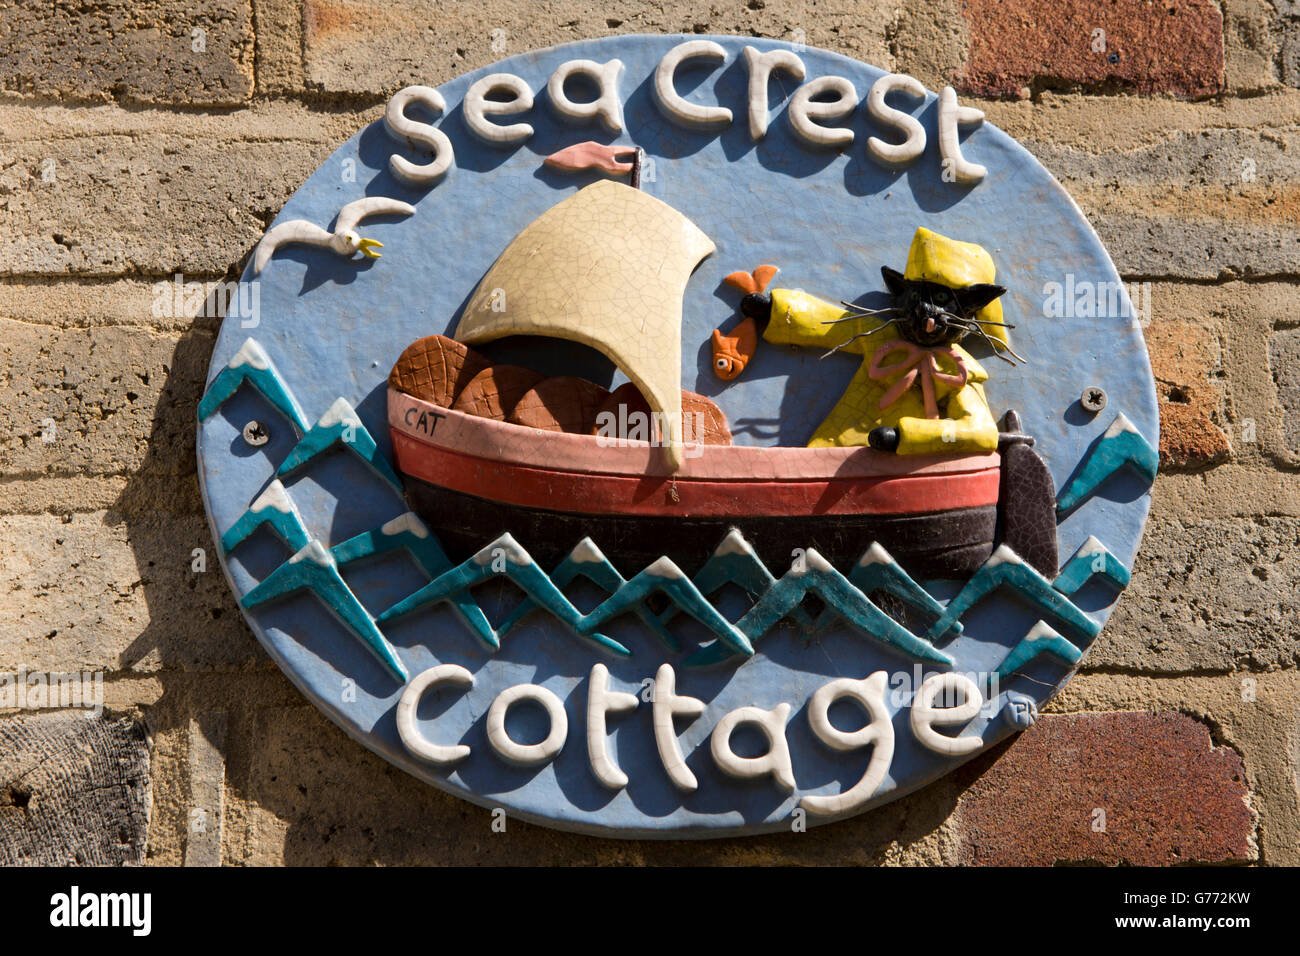 Royaume-uni, Angleterre, dans le Yorkshire, Staithes, High Street, Sea Crest Chalet, maison en céramique fait main sign Banque D'Images